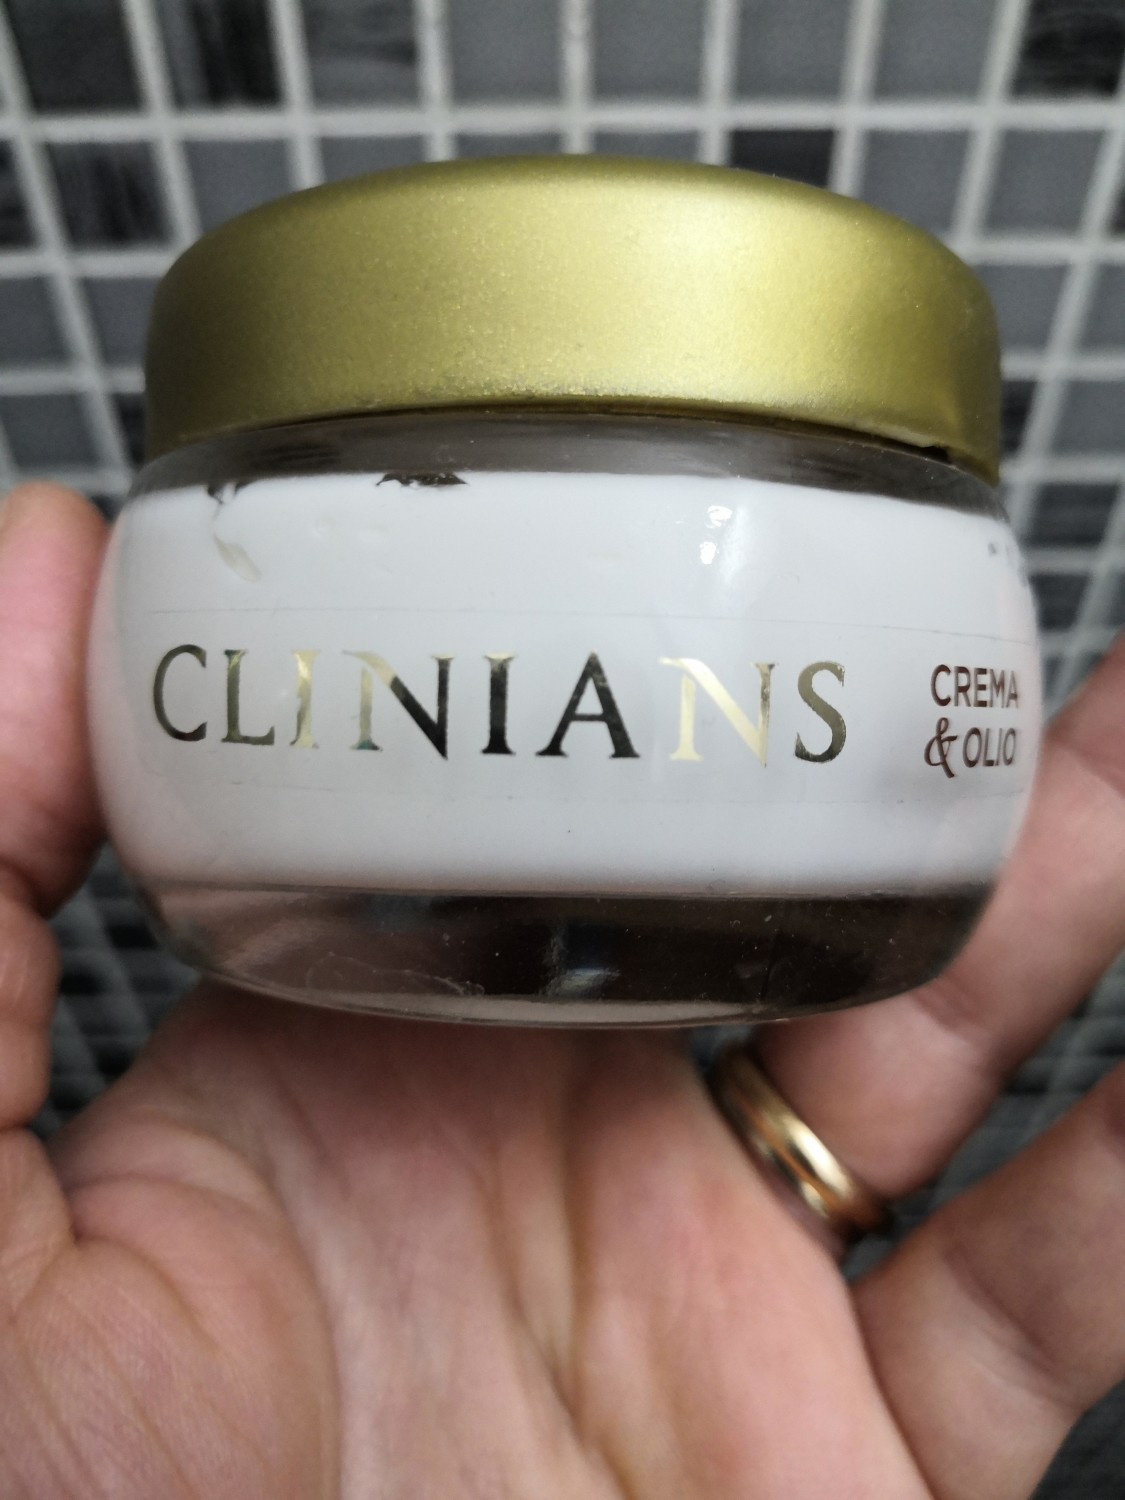 Crema clinians